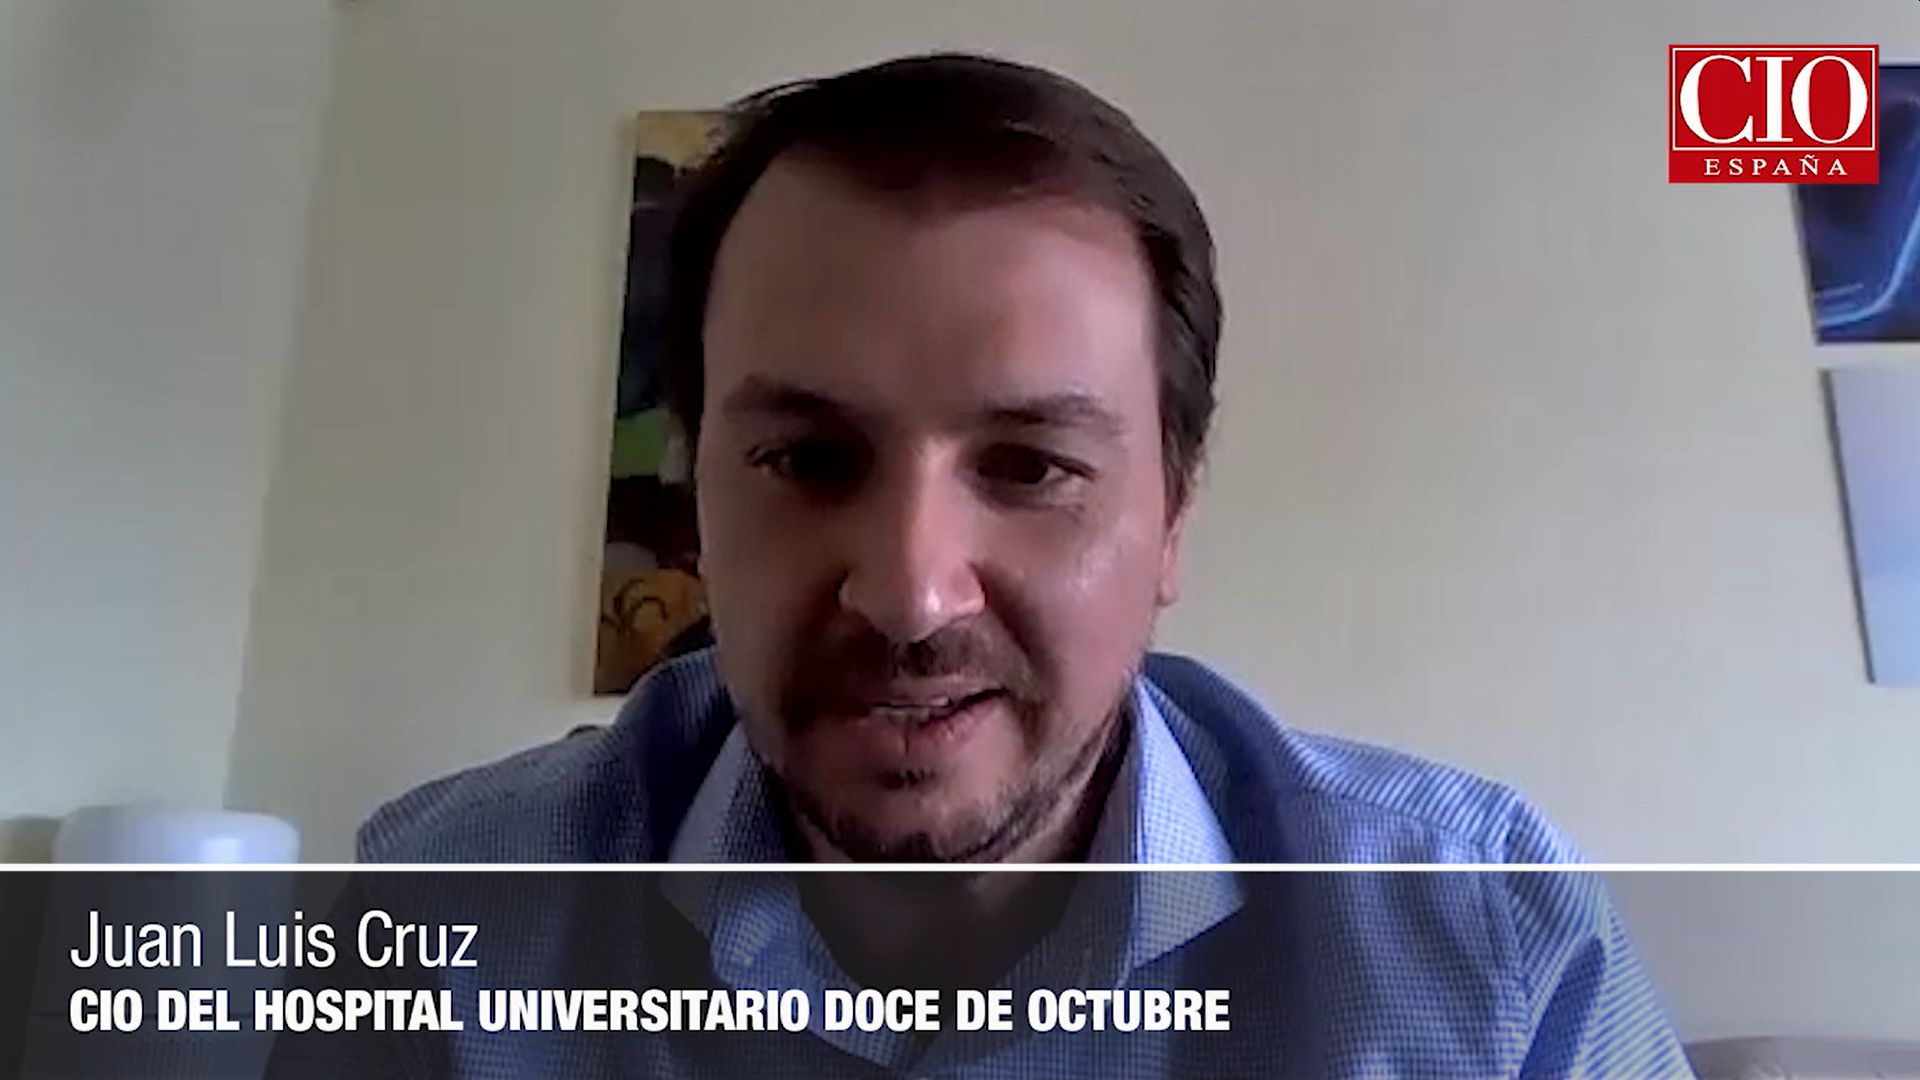 Juan Luis Cruz Bermúdez, CIO del Hospital Universitario 12 de Octubre